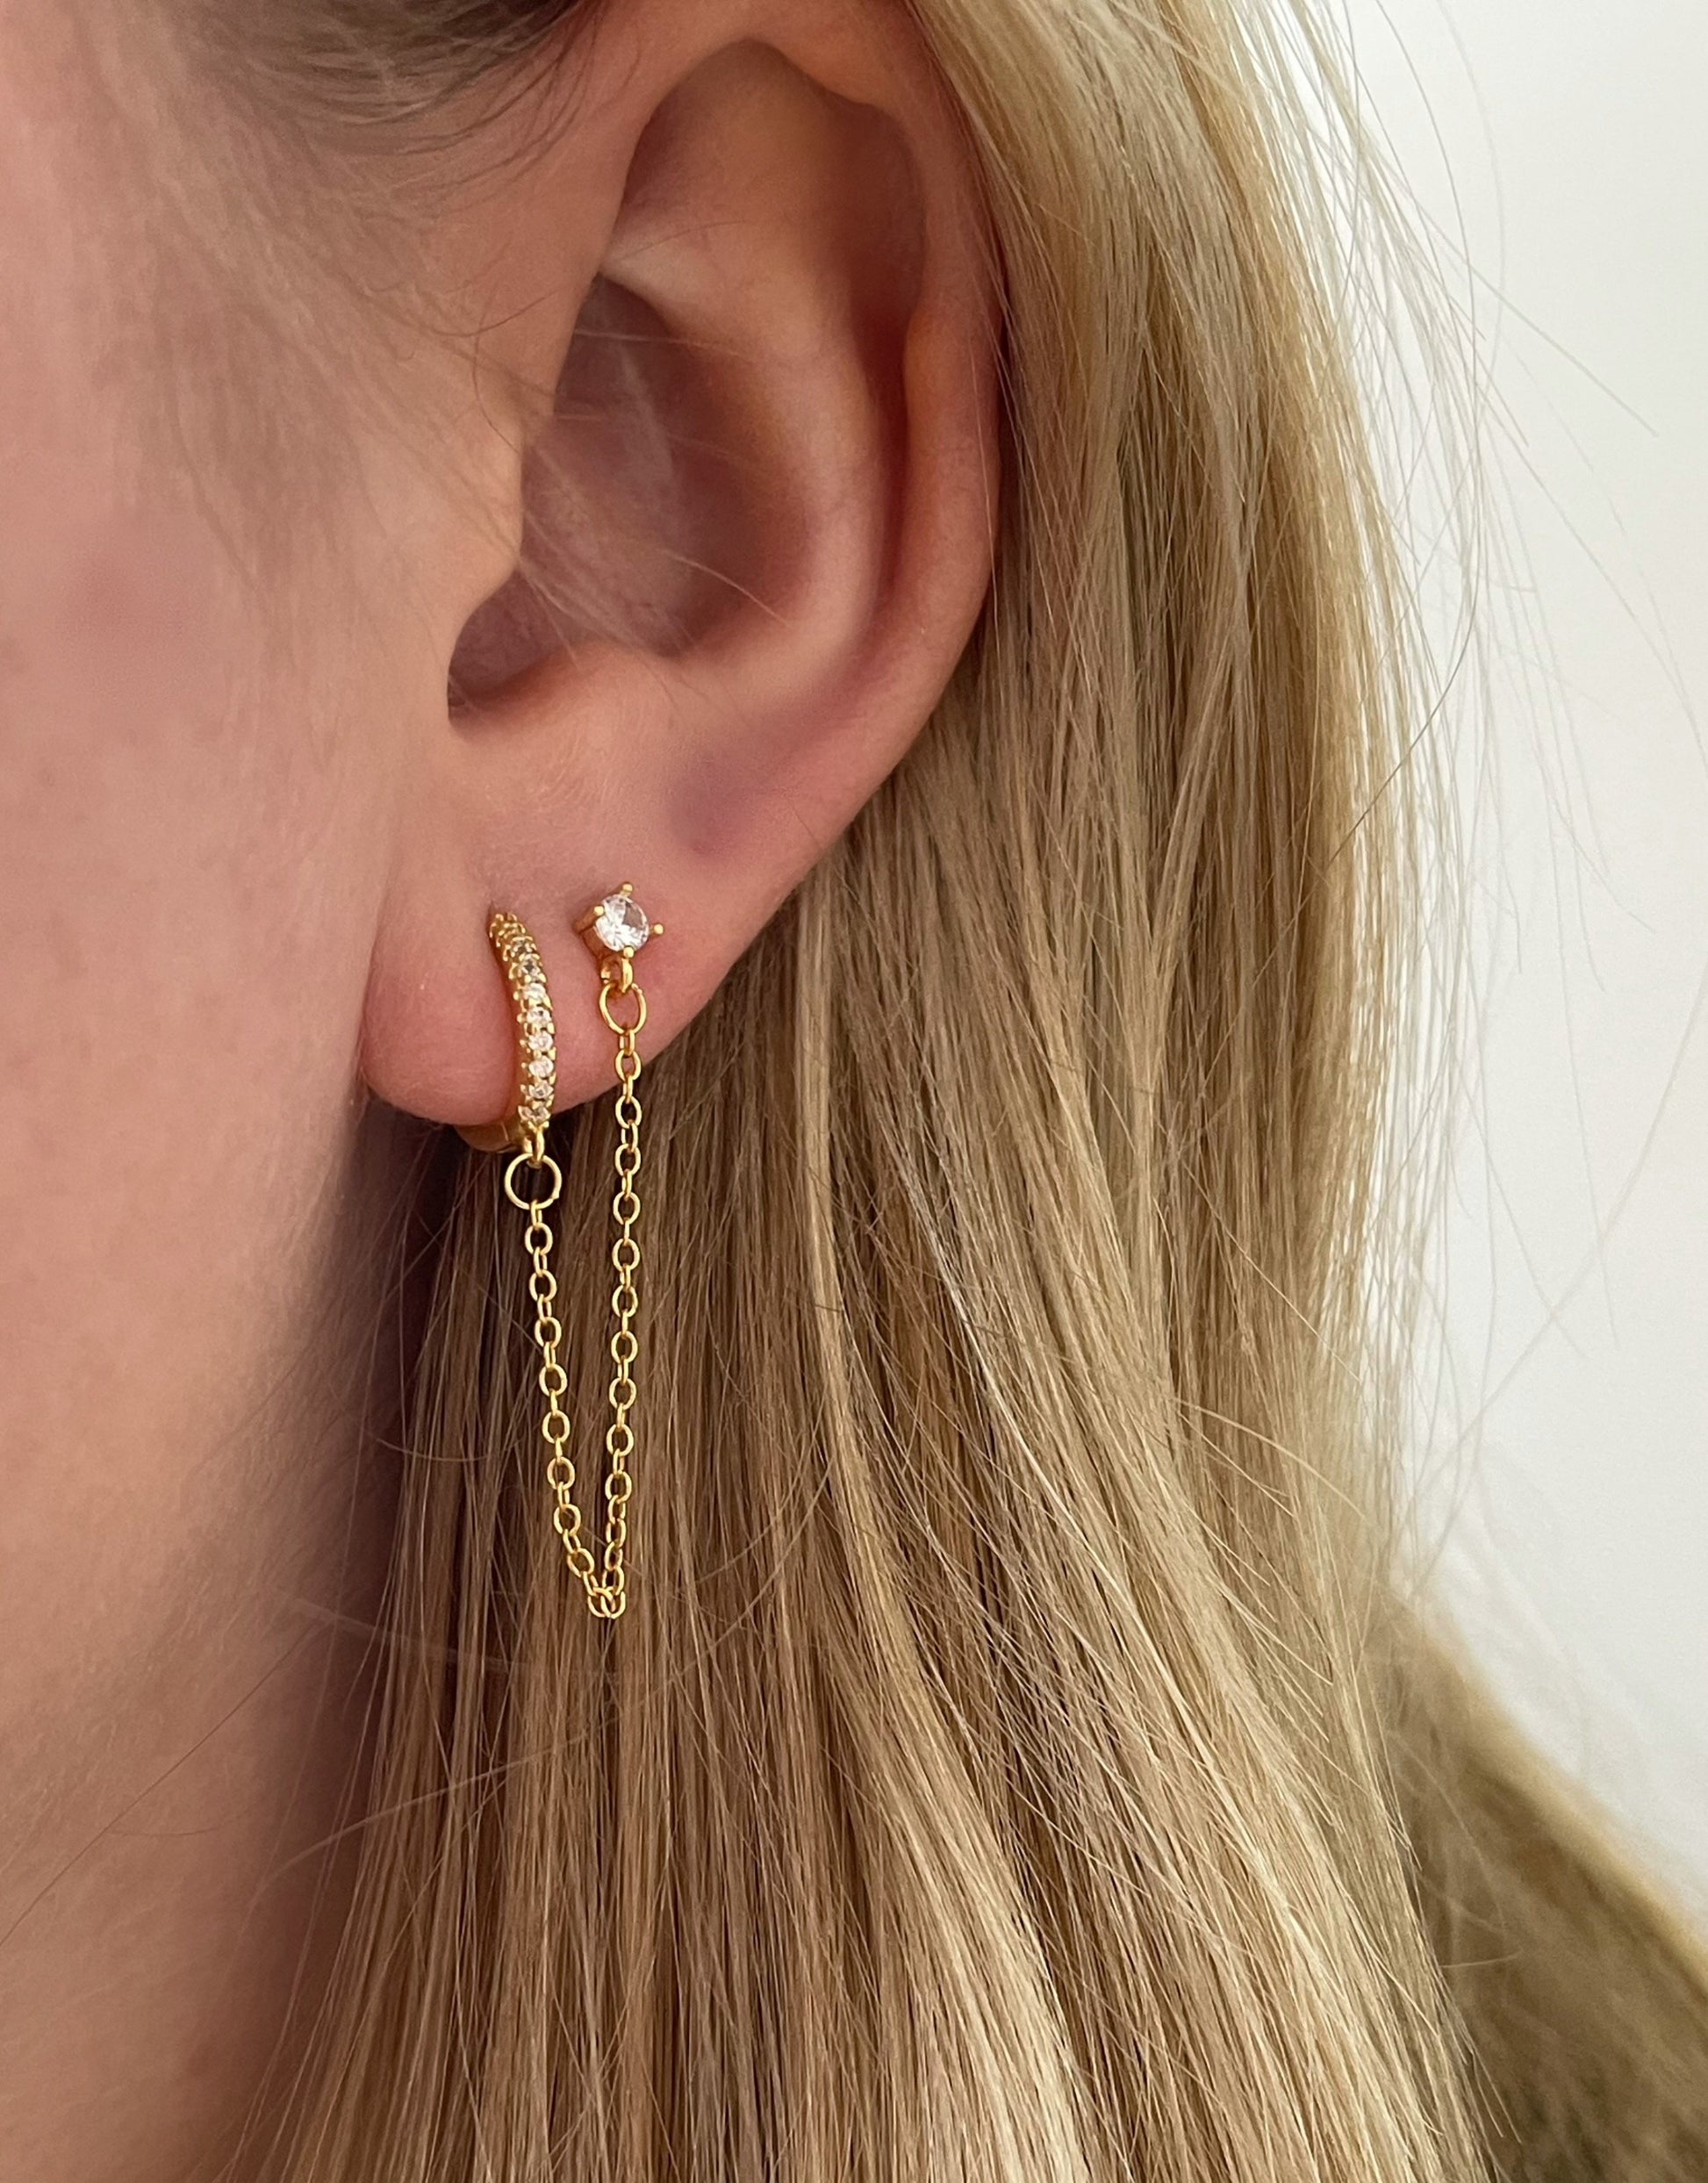 Bella øreringe i guld med vedhæng til ekstra hul i øret. Øreringene er med zircon sten på begge øreringe.   Øreringene er lette og føle behagelige i ørene.